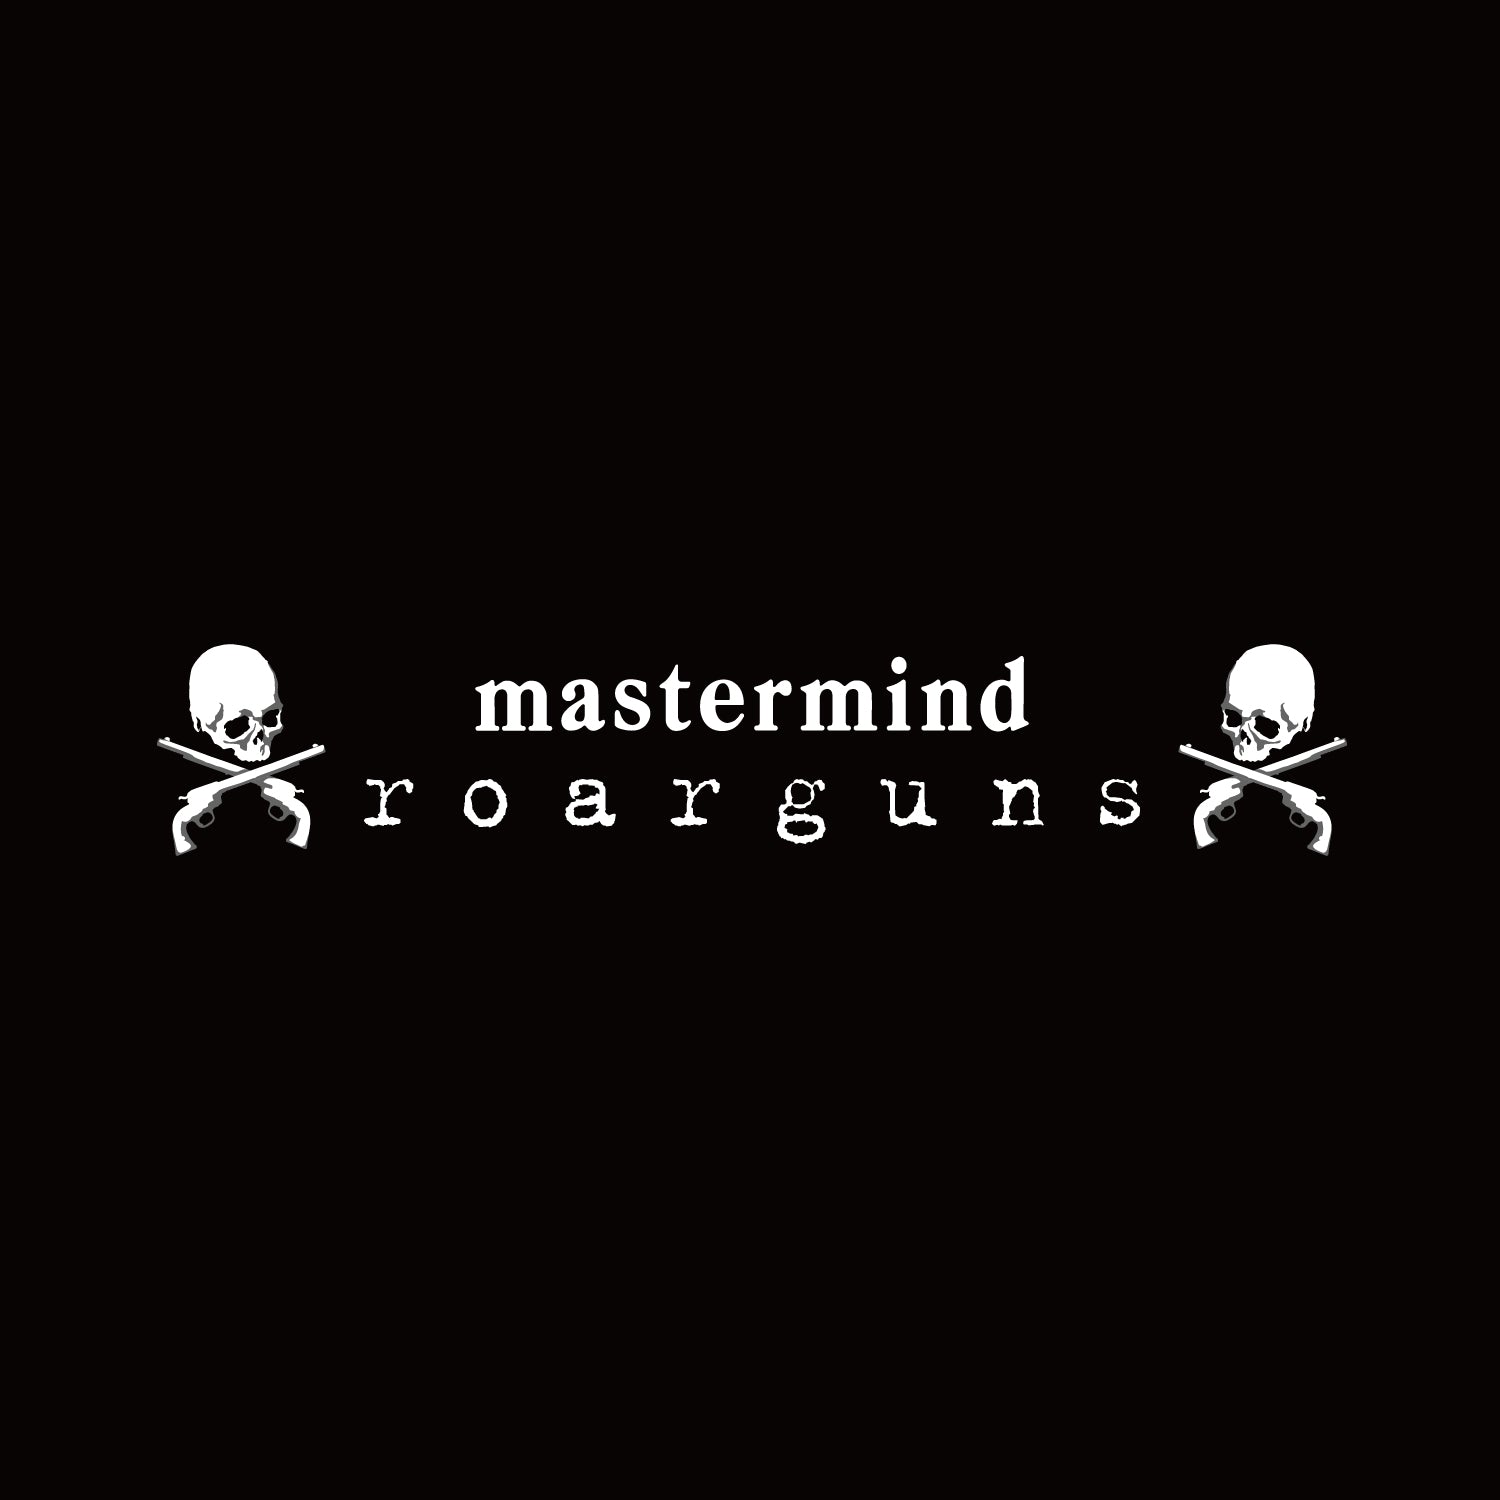 Mastermind × roar | hartwellspremium.com